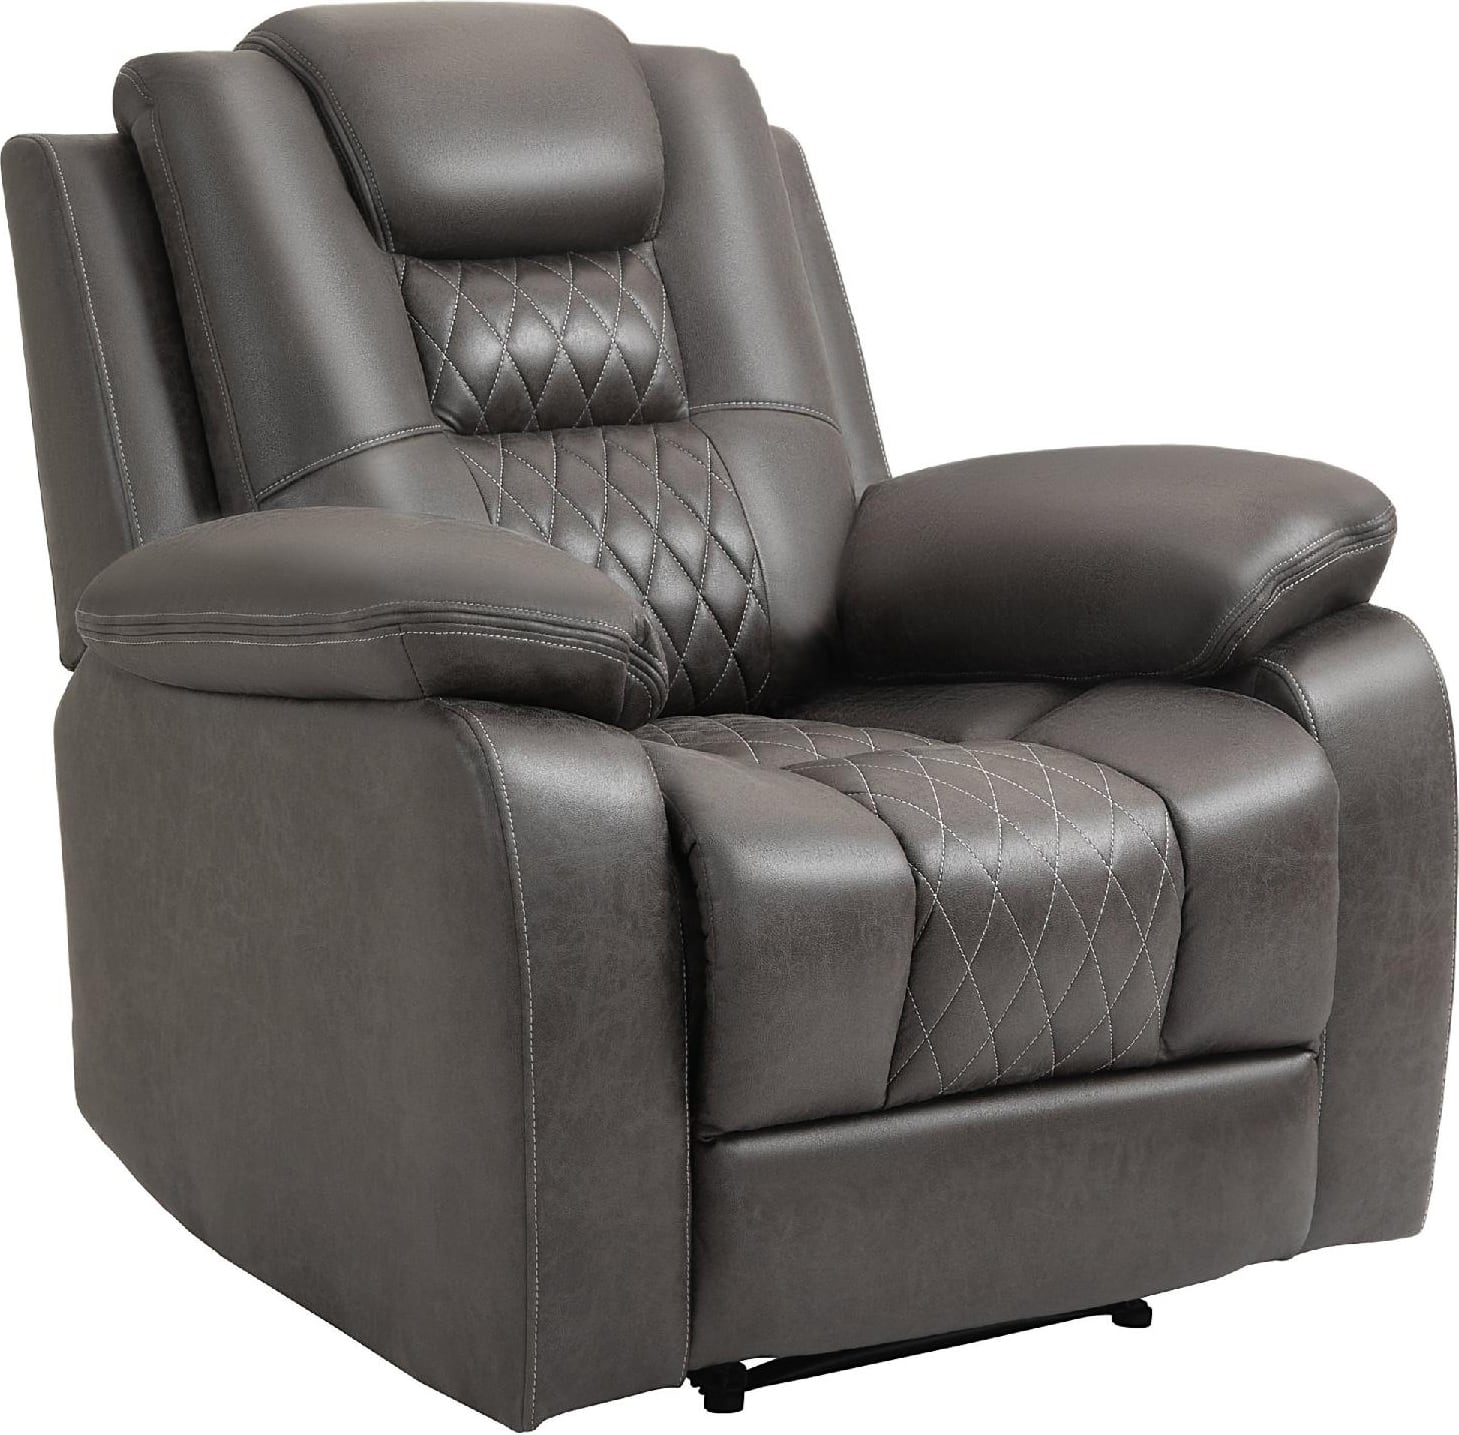 dechome 970e833 poltrona relax reclinabile seduta ergonomica e imbottitura extra colore marrone - 970e833